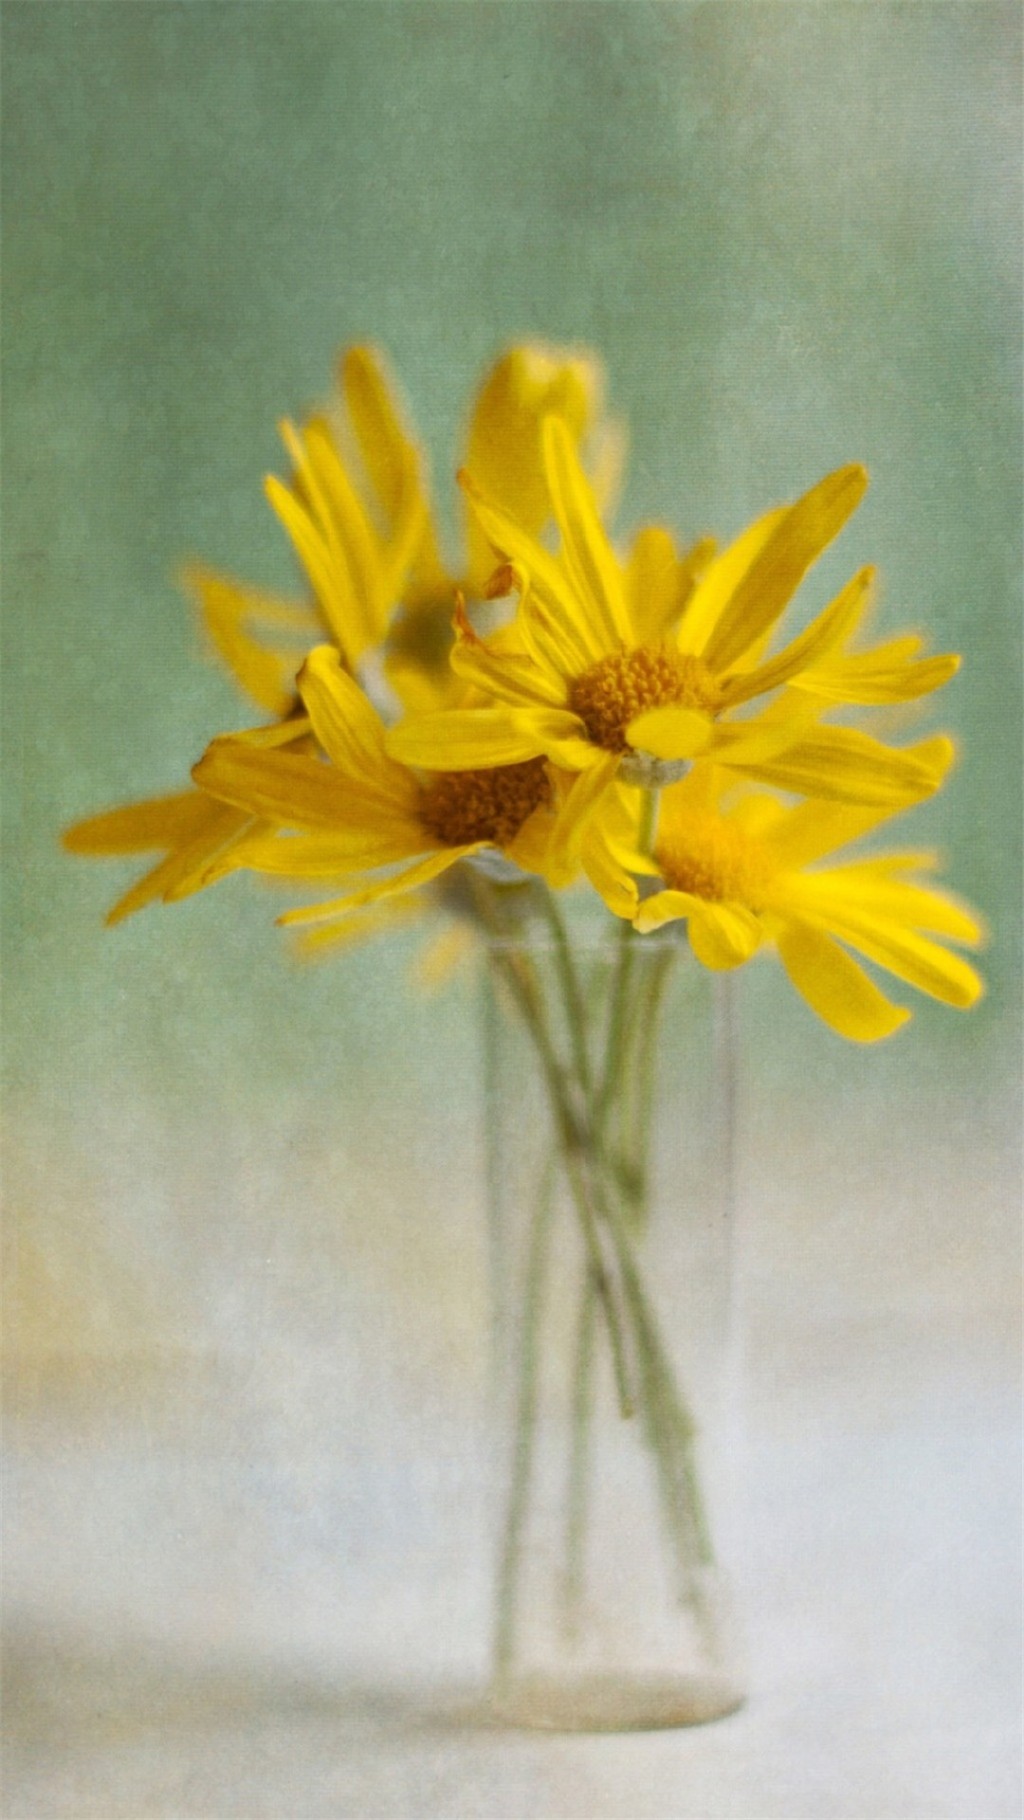 花瓶中的花卉静物摄影图片手机壁纸